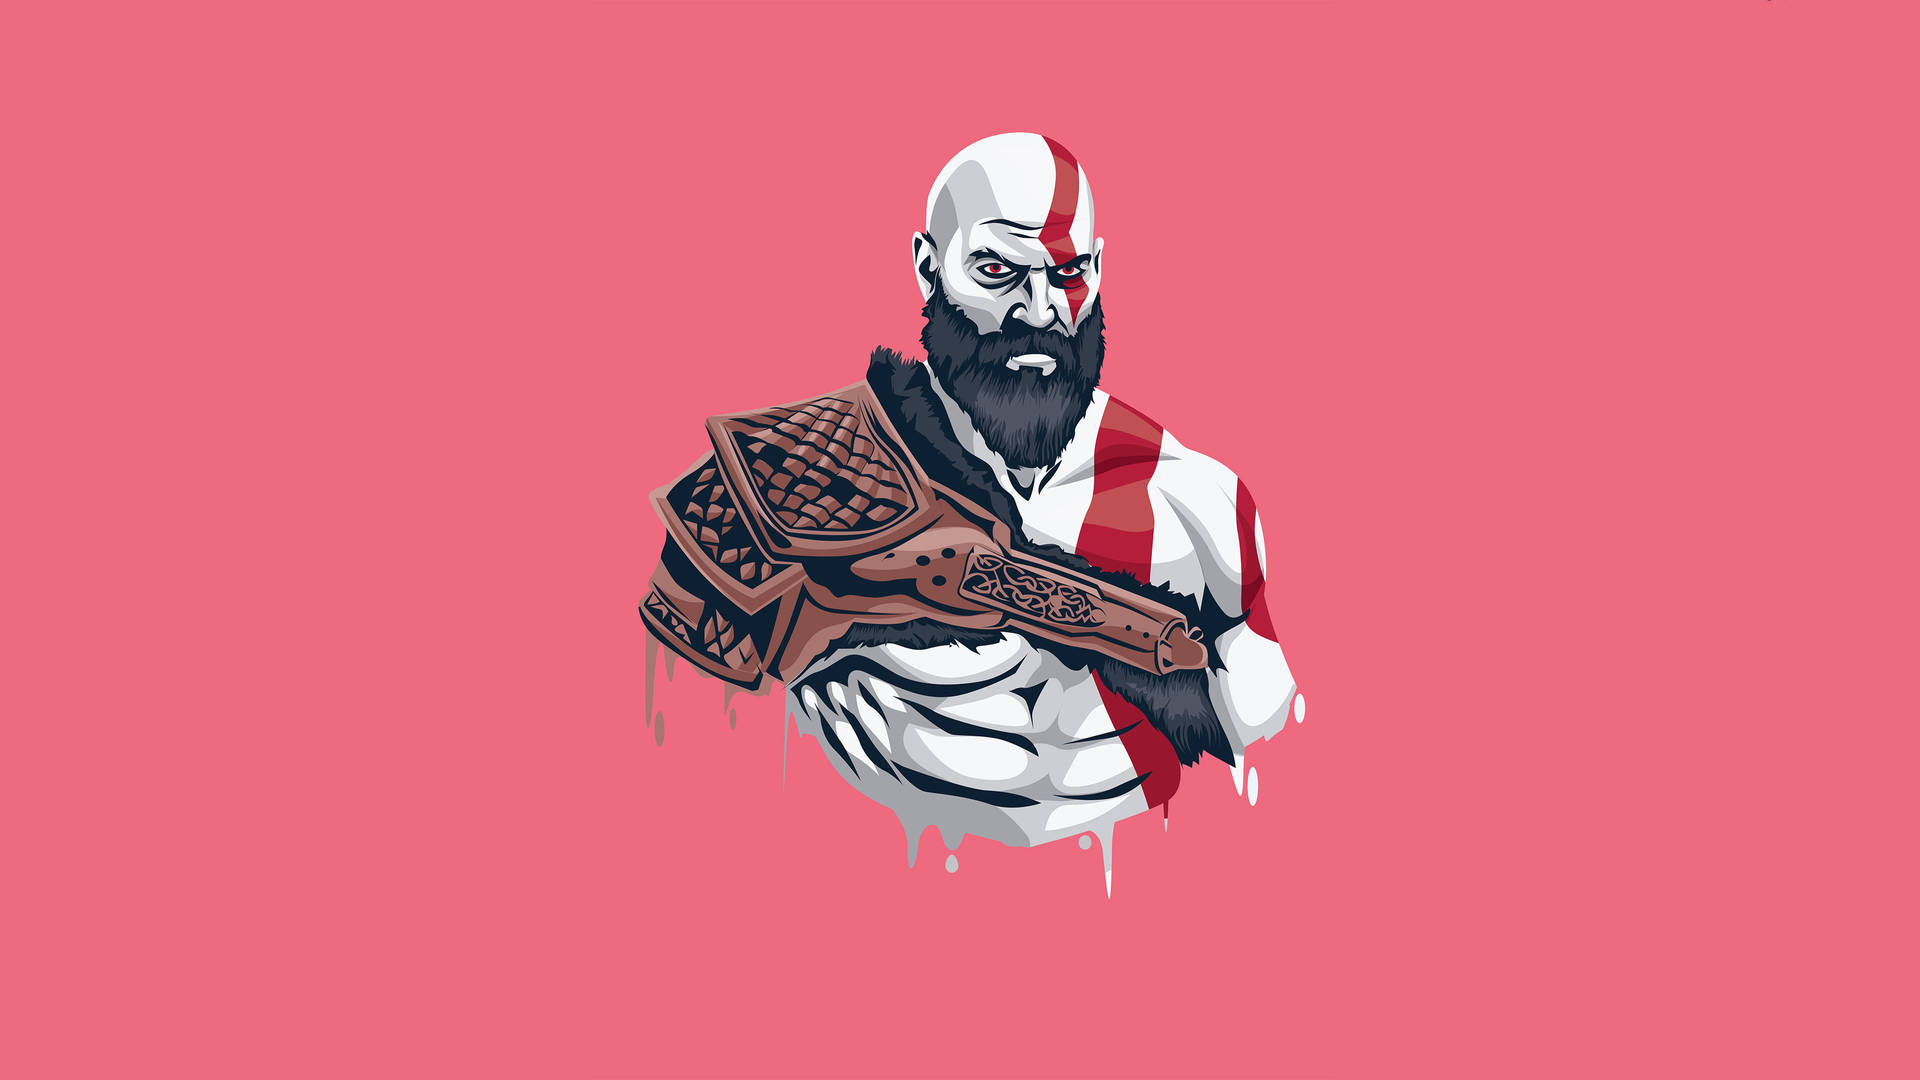 Kratos Aesthetic Minimalist Artwork